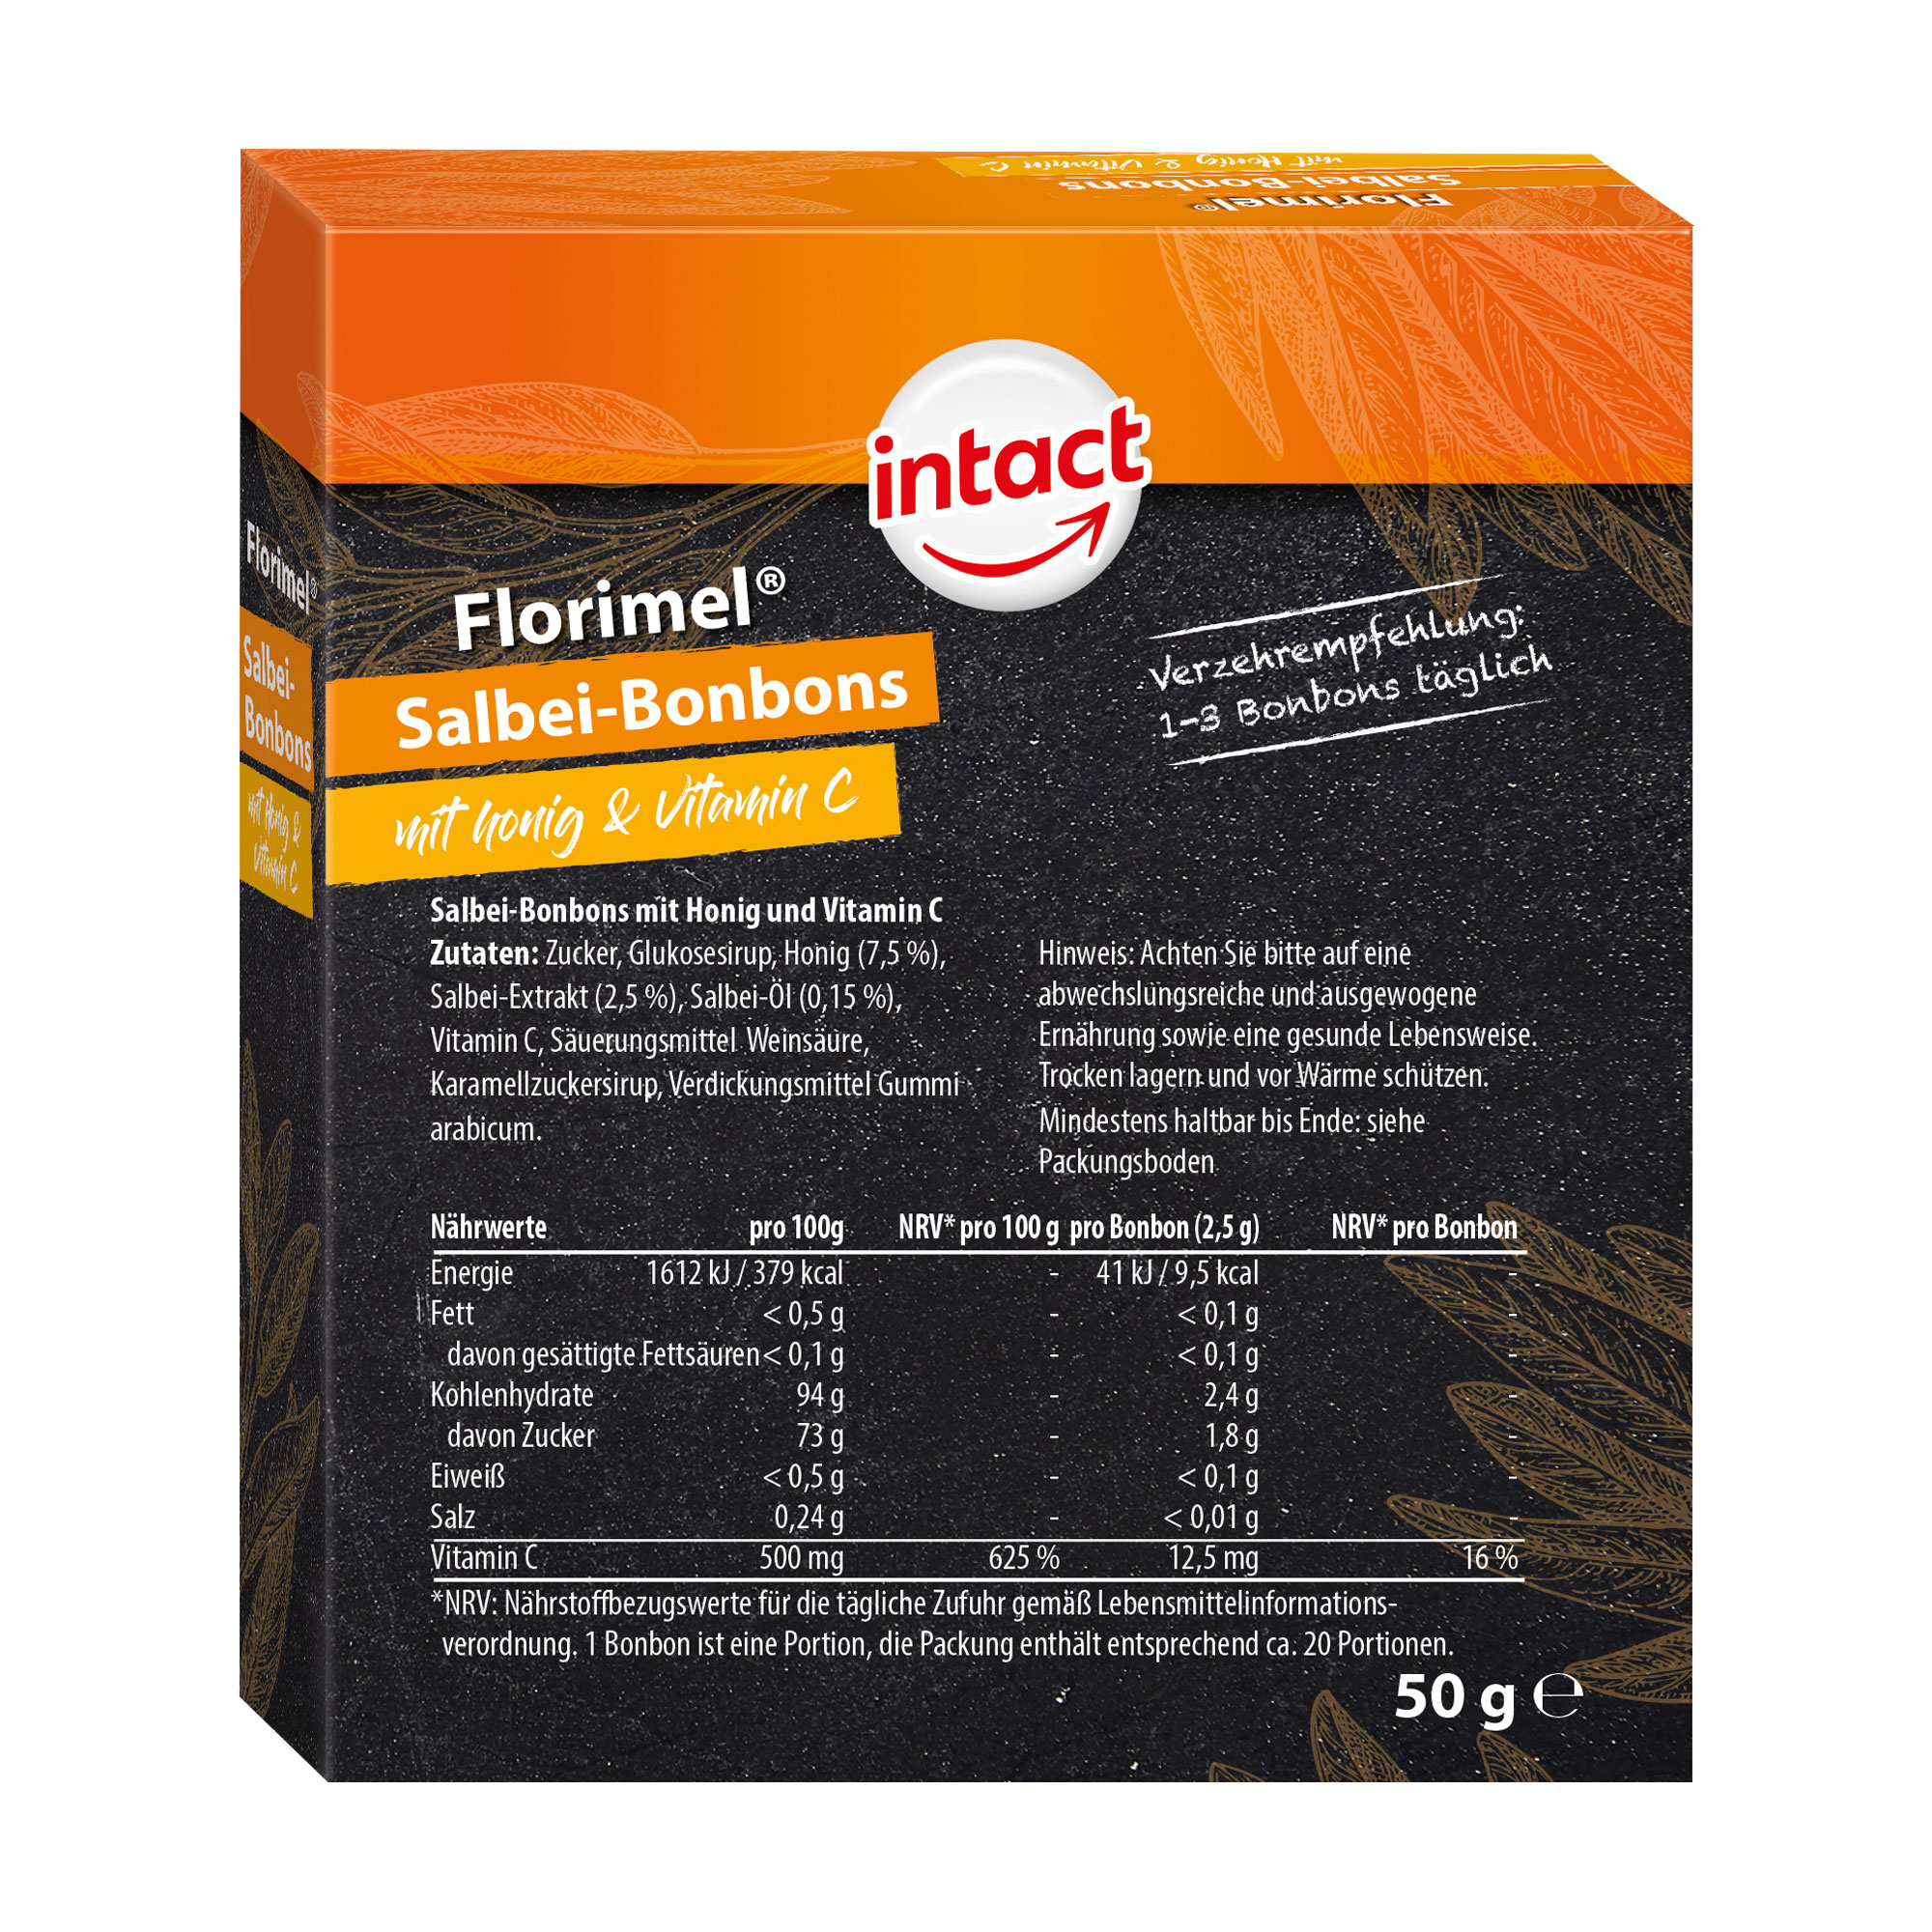 Intact Florimel Salbeibonbons mit Vitamin C und Honig Rückseite